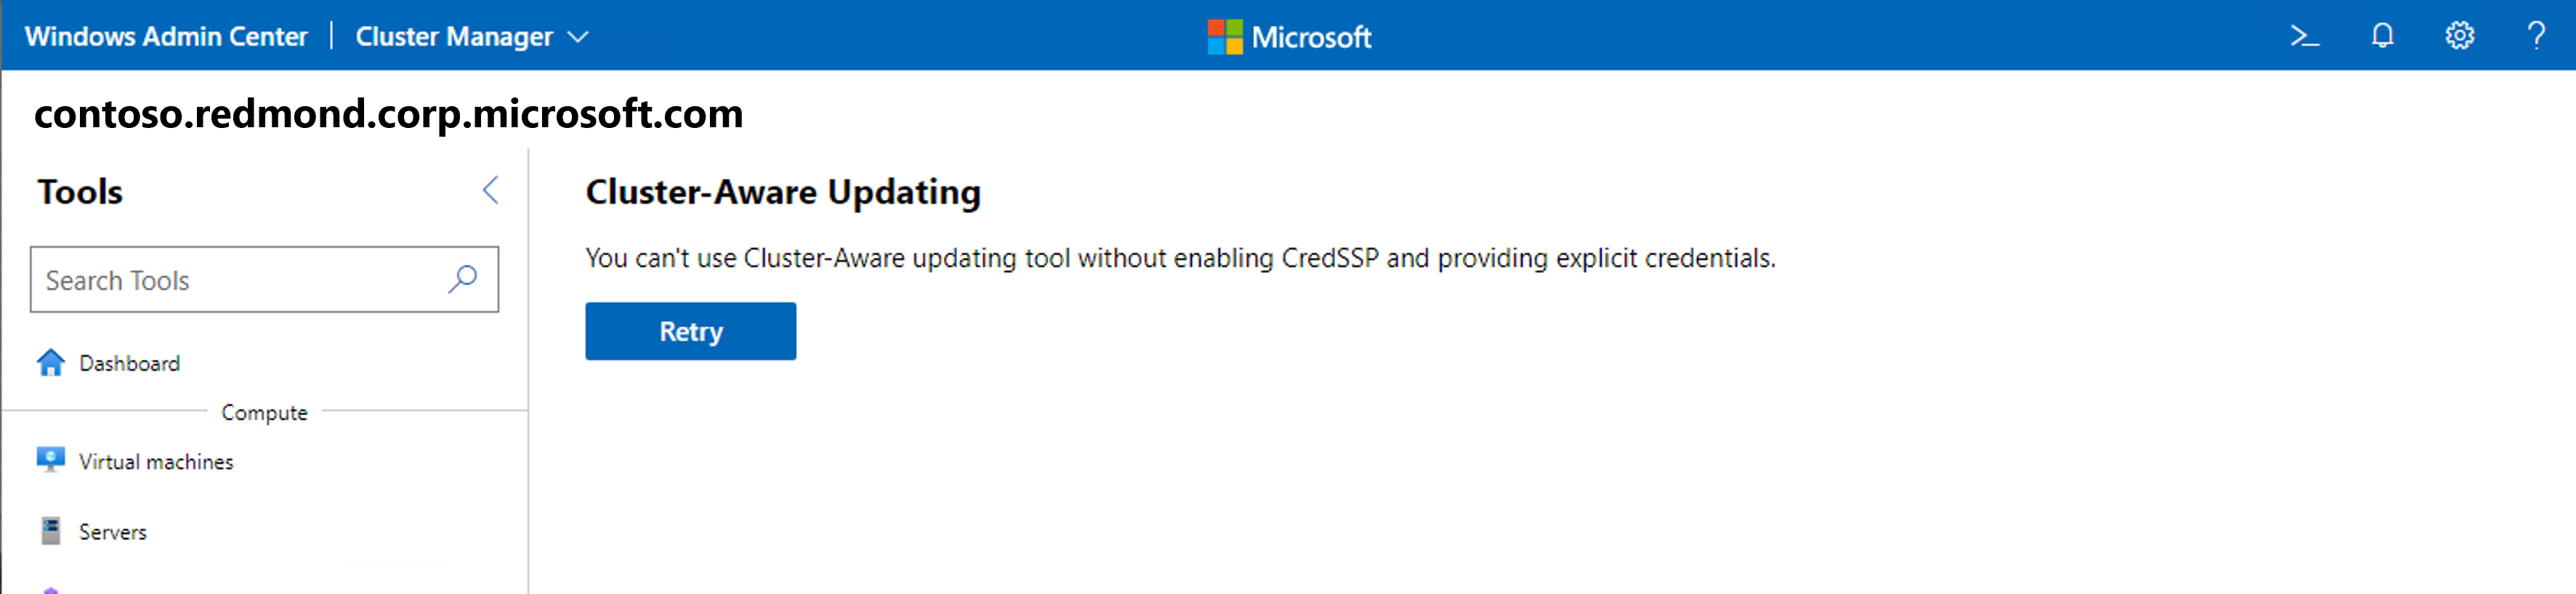 Windows Admin Center で Cred S S Pエラーによるクラスター対応更新を使用した更新ツールのスクリーンショット。